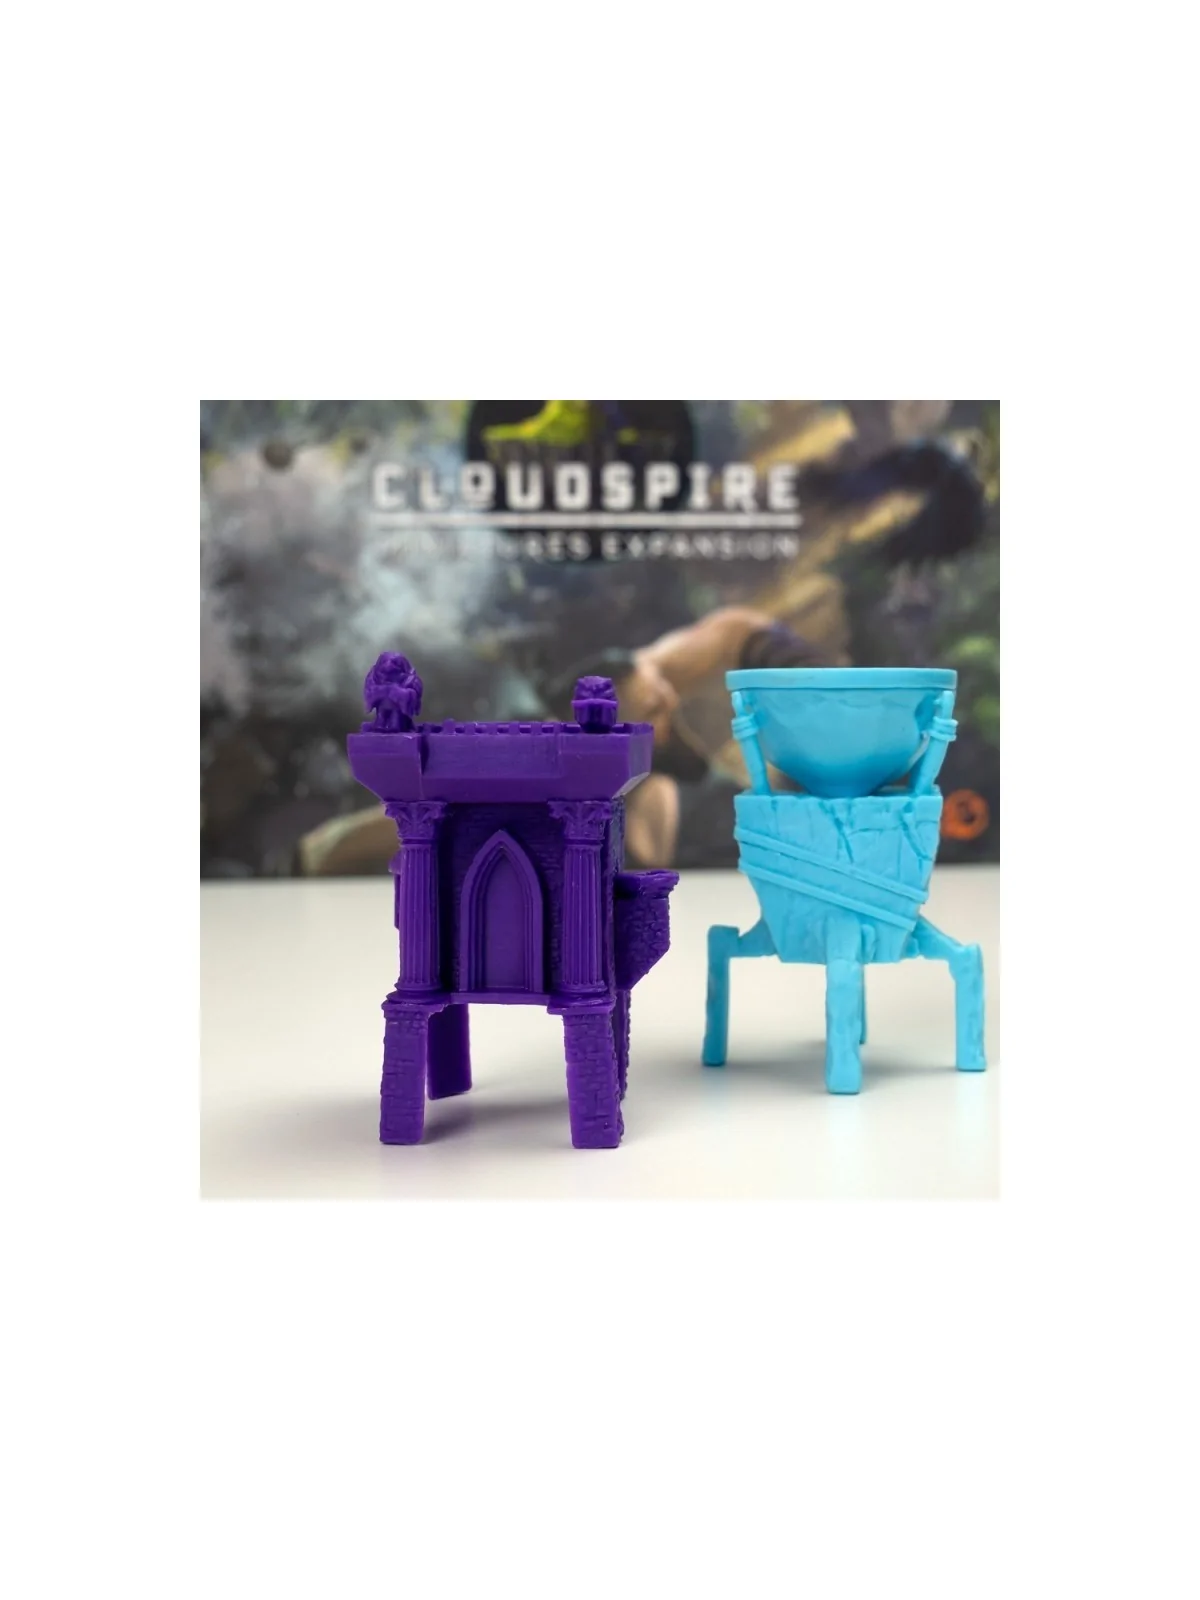 Comprar Cloudspire: Miniatures Expansion barato al mejor precio 85,00 